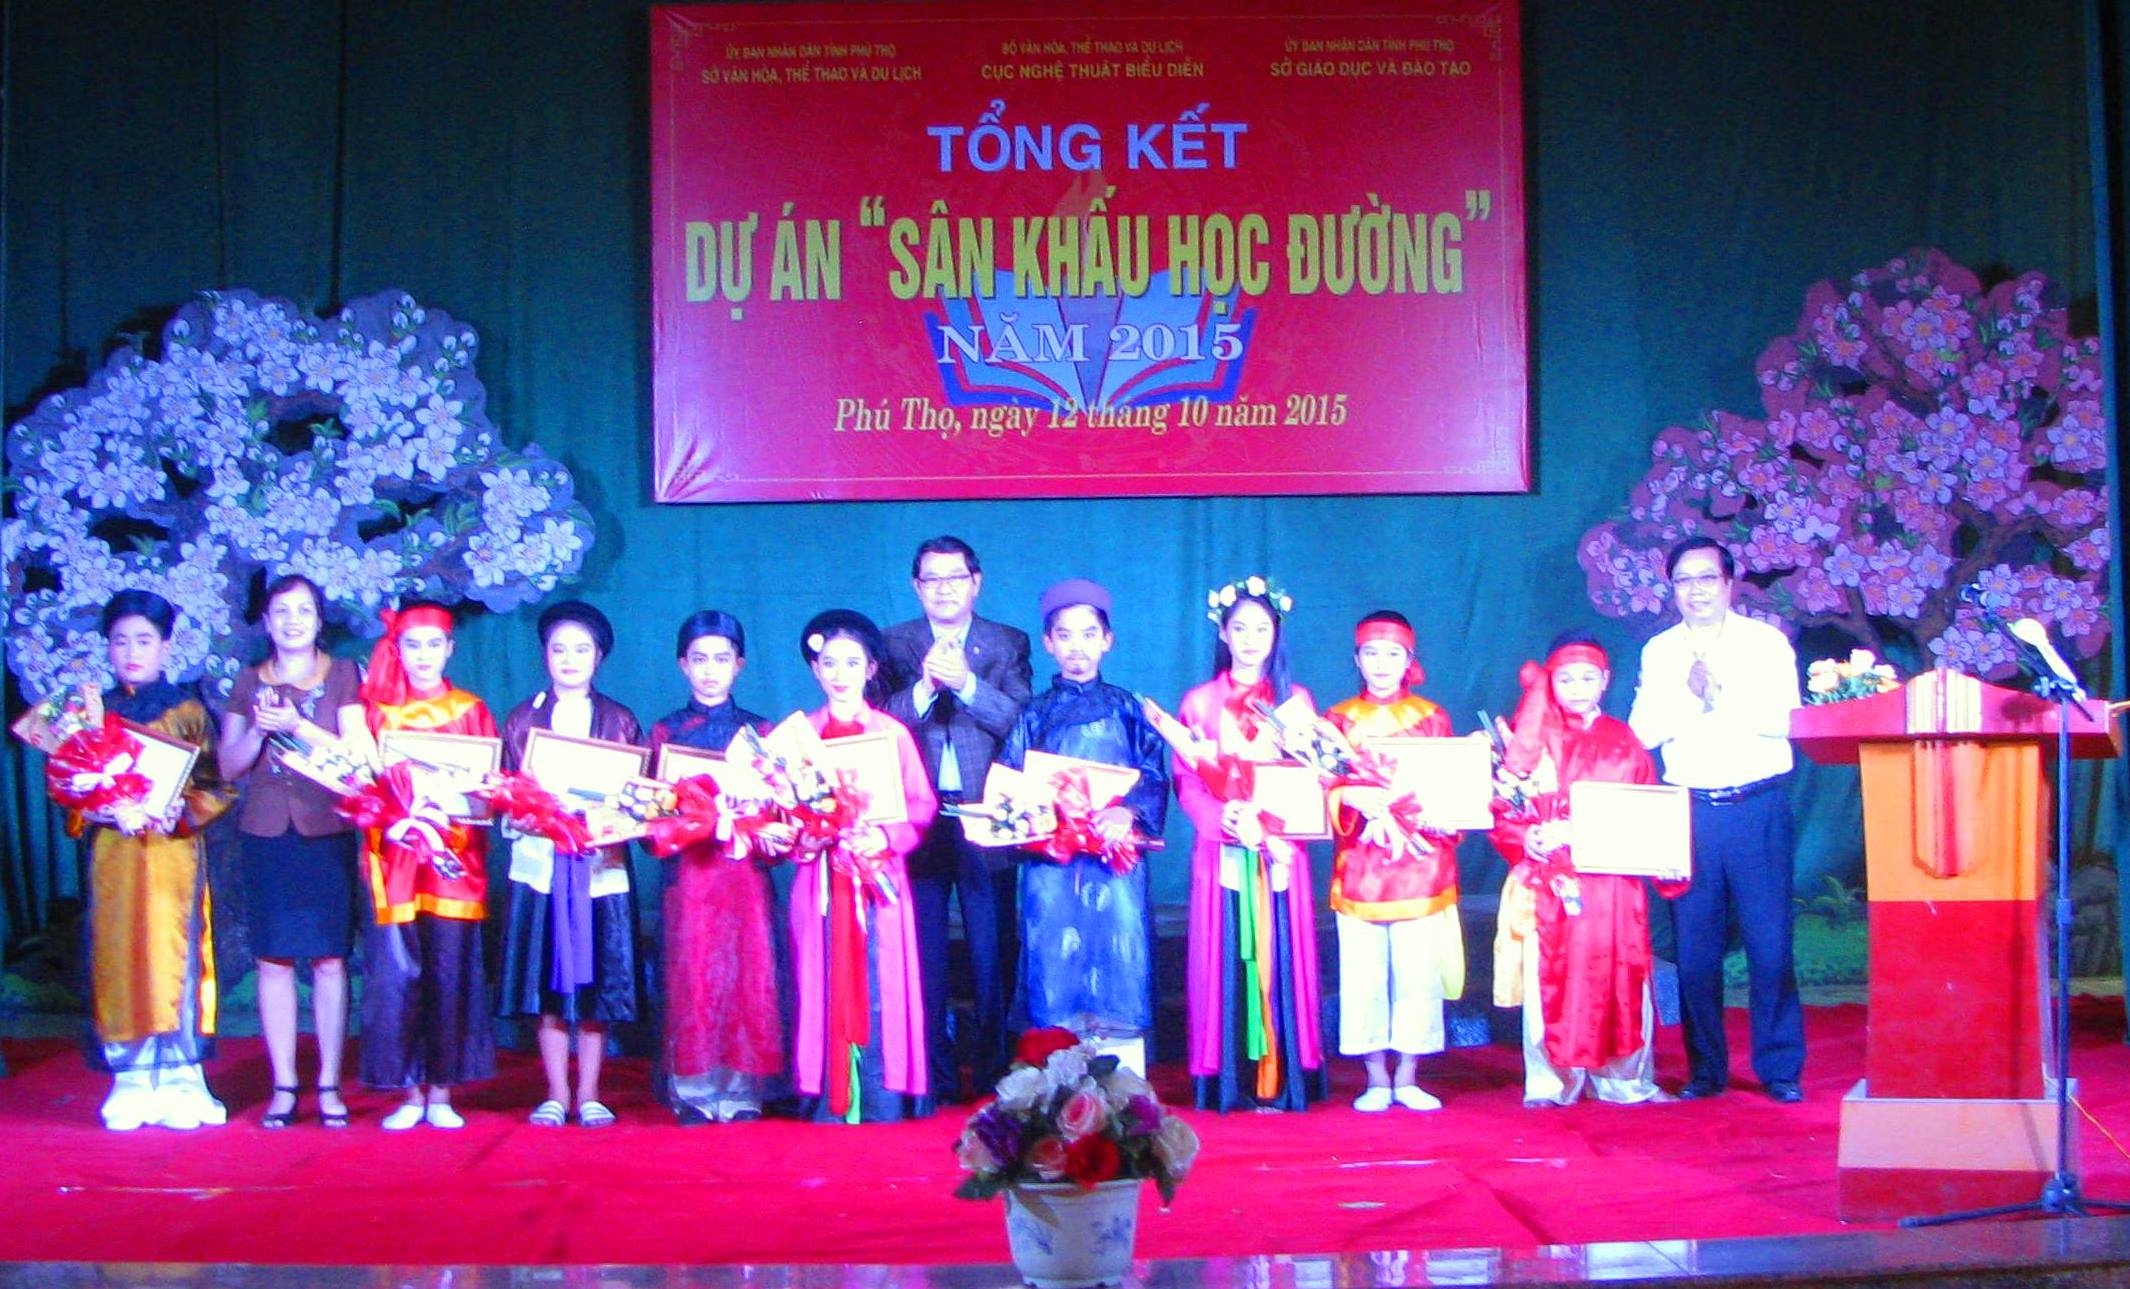 Tổng kết Dự án “Sân khấu học đường” tại tỉnh Phú Thọ